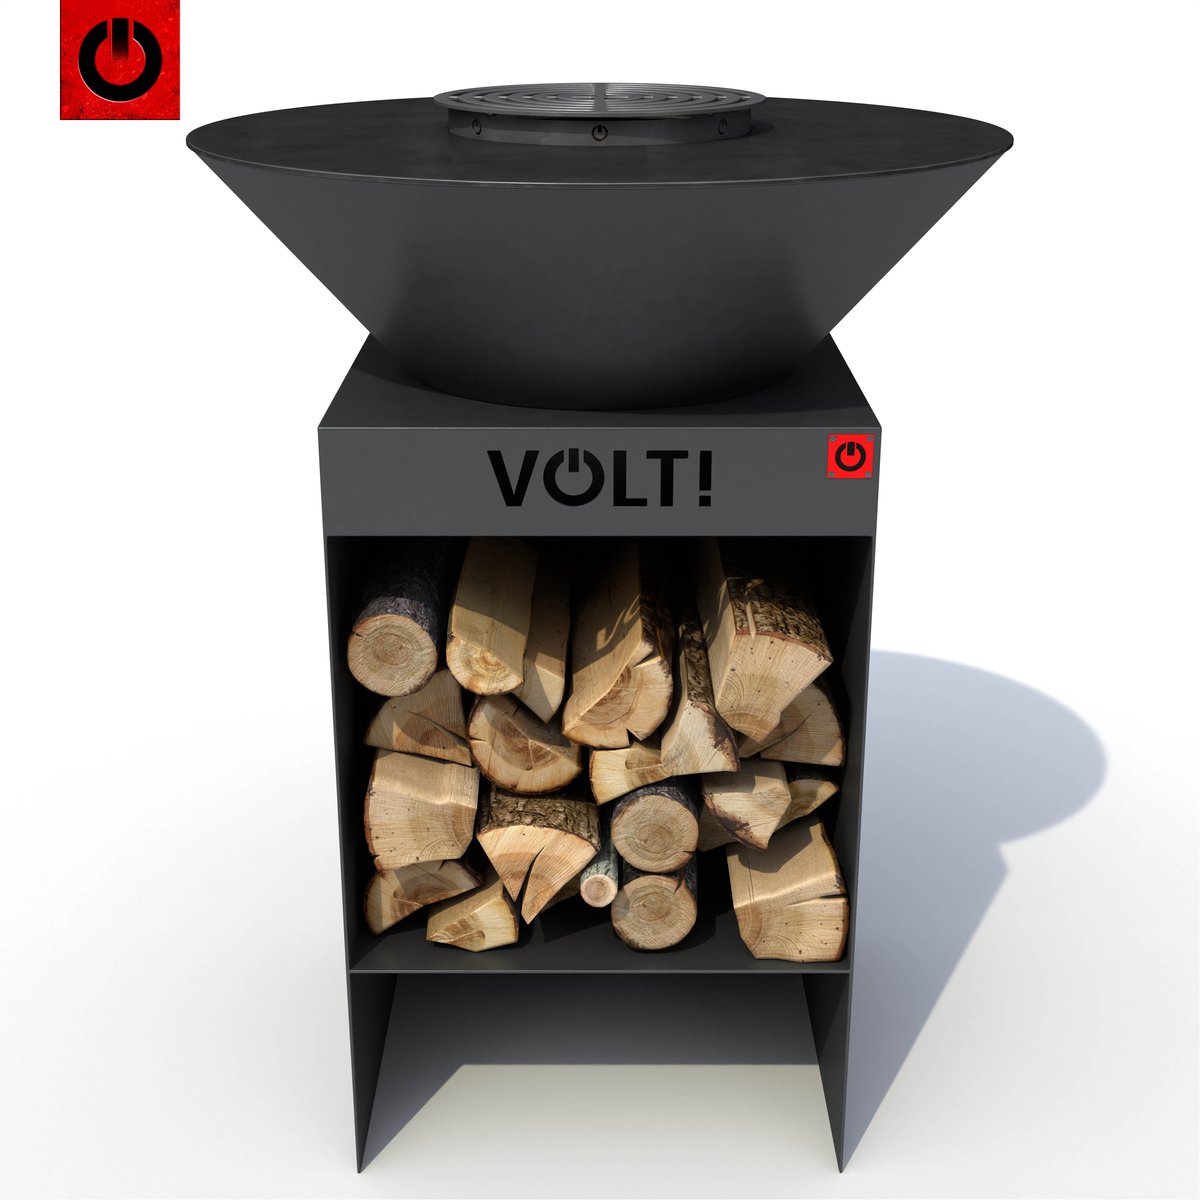 VOLT! Dutch Fire Bowl Barbecue Grill - Vuurschaal met Houtopslag voor Buiten - Buitenkeuken - Grillplaat - Plancha Barbecue - Grillrooster - Grillring